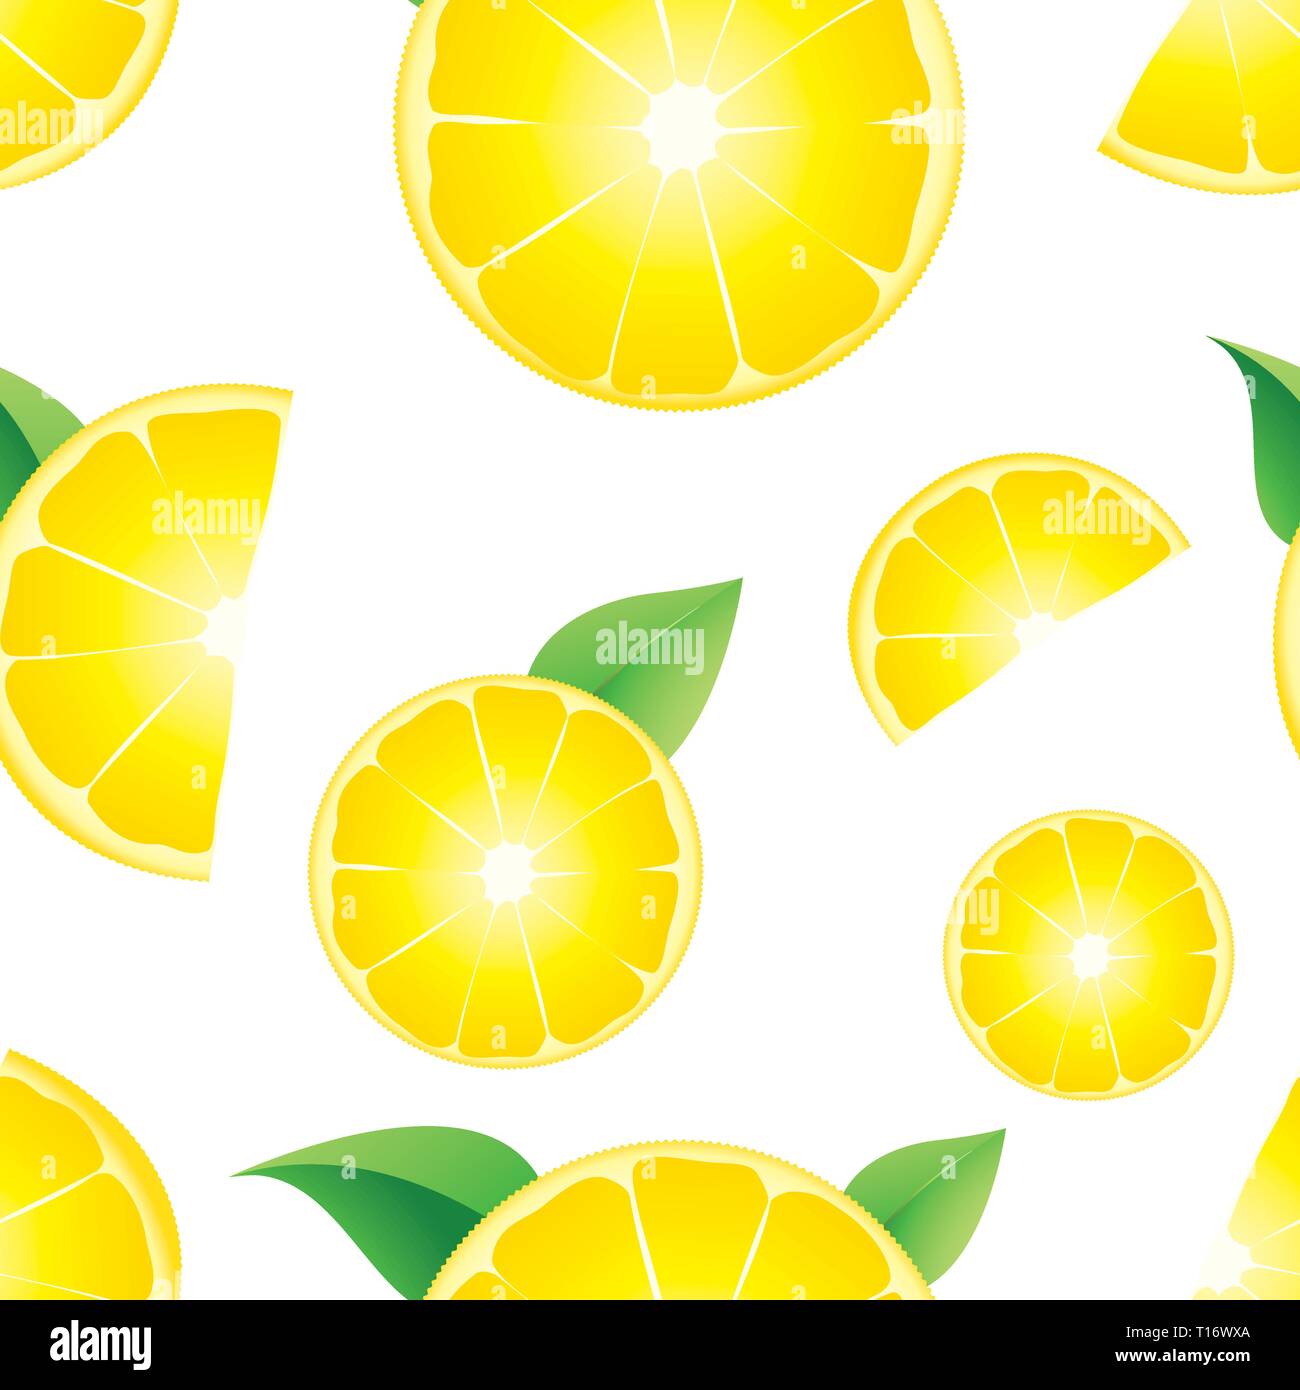 Lemon seamless background, vector illustration Stock Vector Image & Art ...